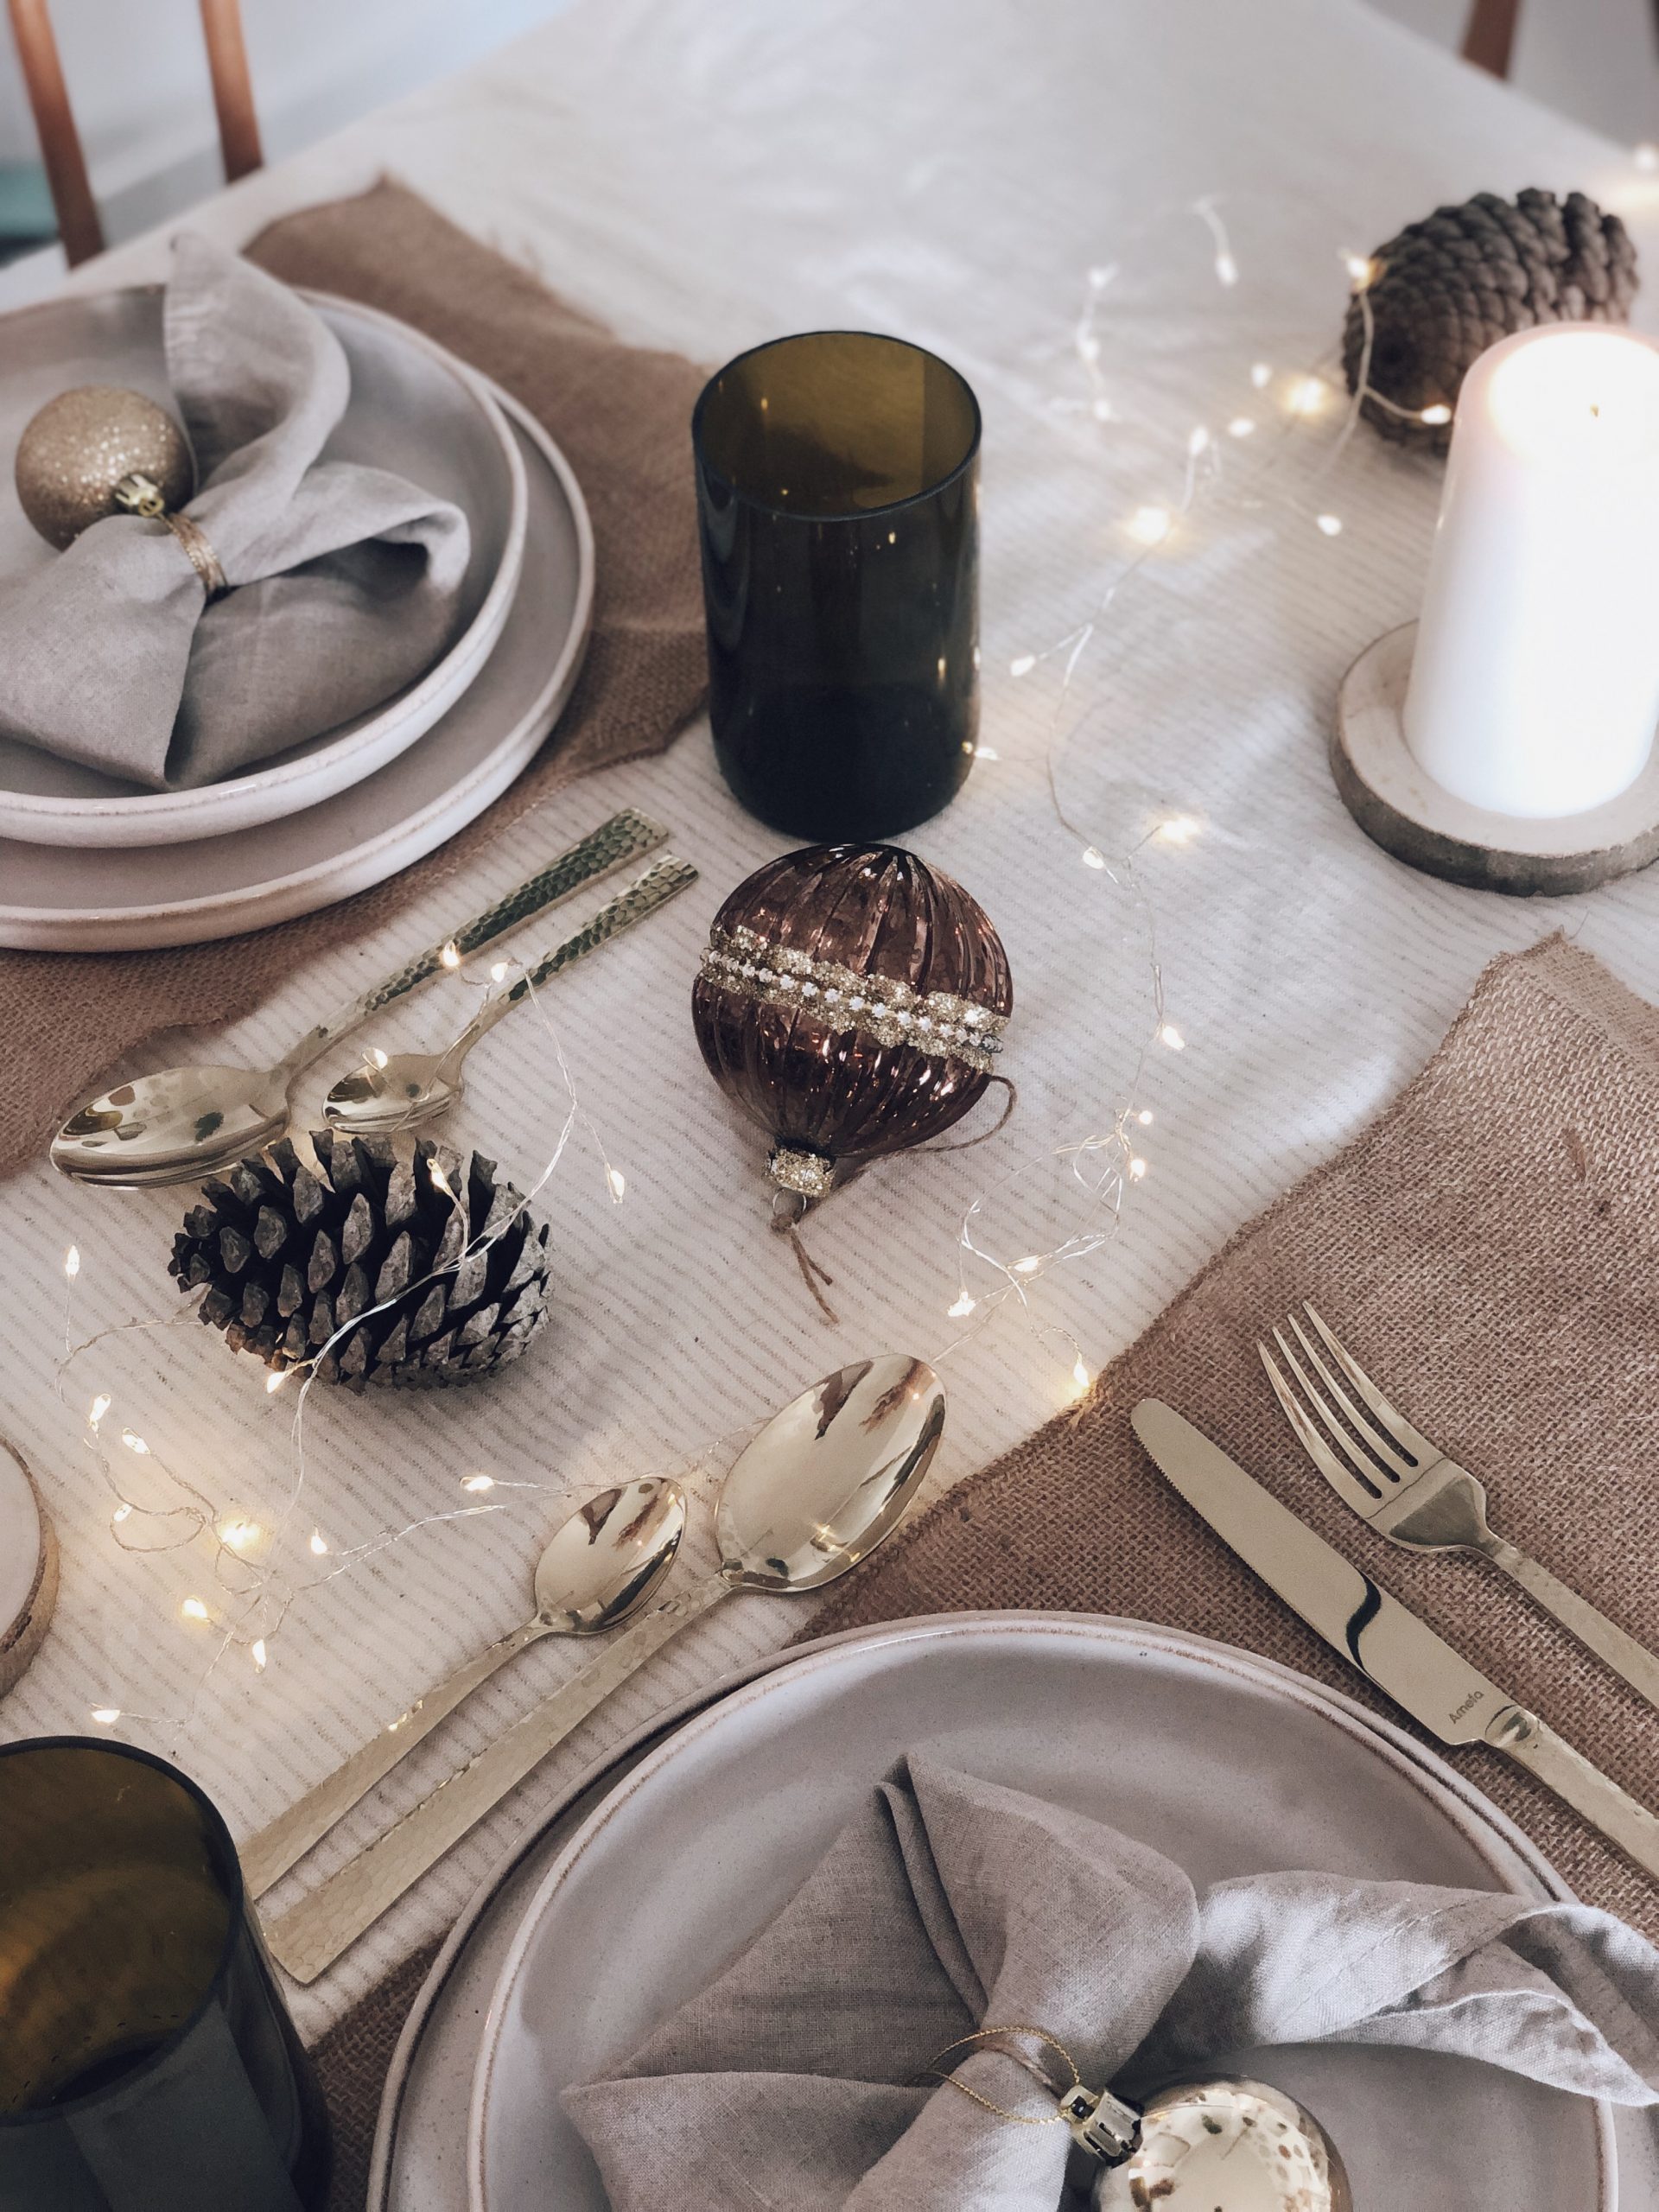 Comment décorer une table de Noël naturelle et originale avec des bougies -  Le blog déco de la génération Y